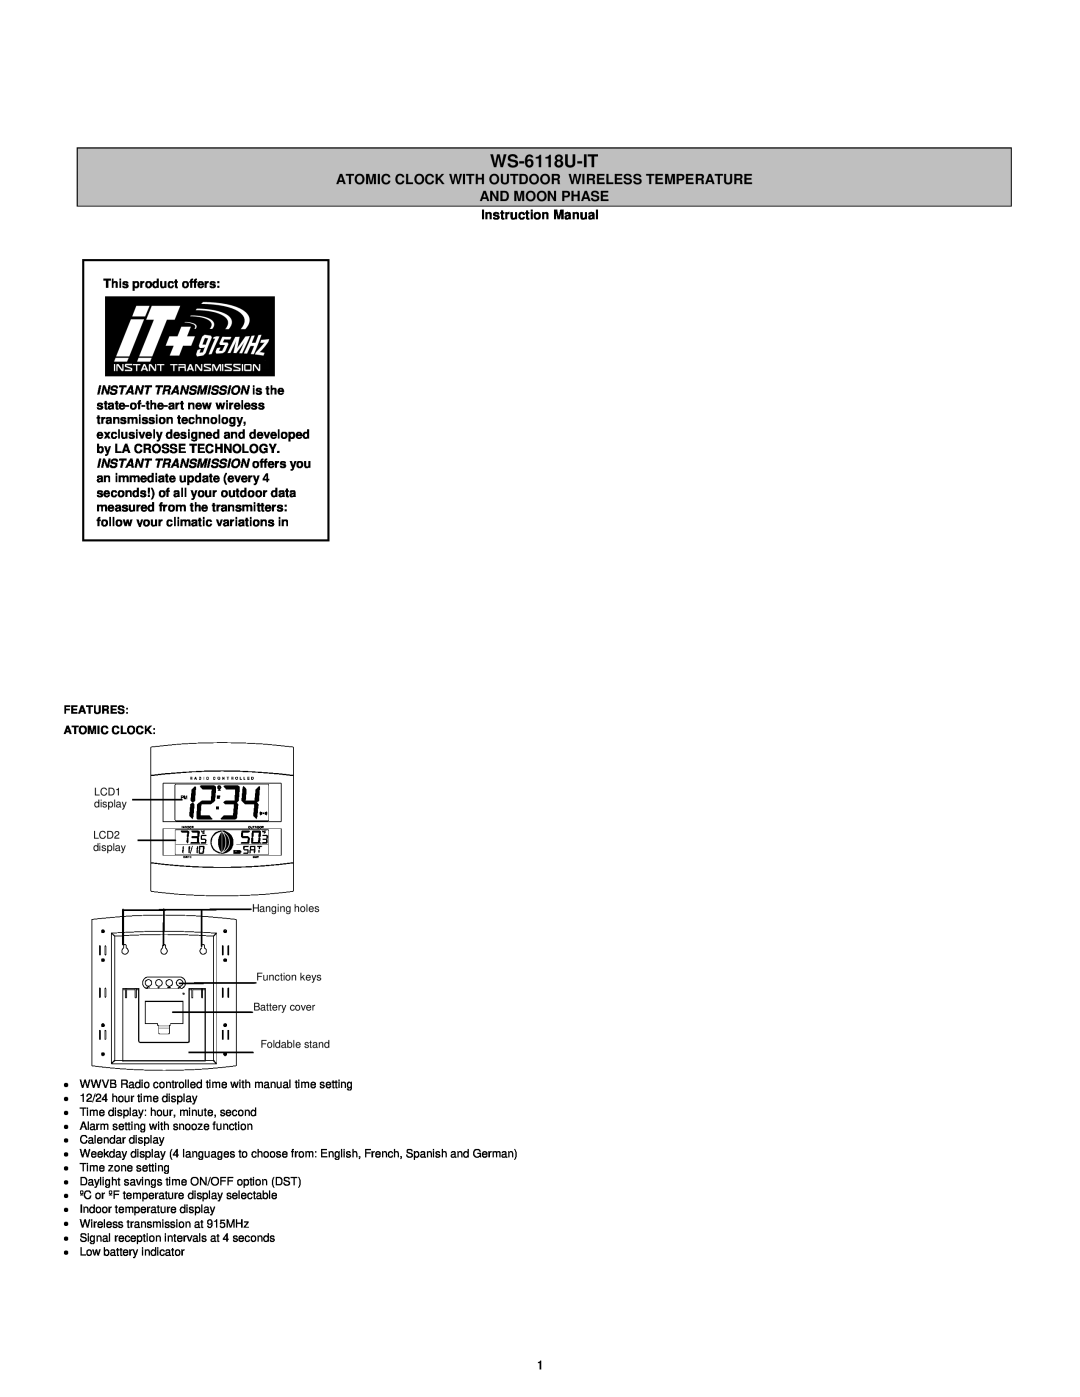 La Crosse Technology WS-6118AL-IT instruction manual WS-6118U-IT, Instruction Manual 